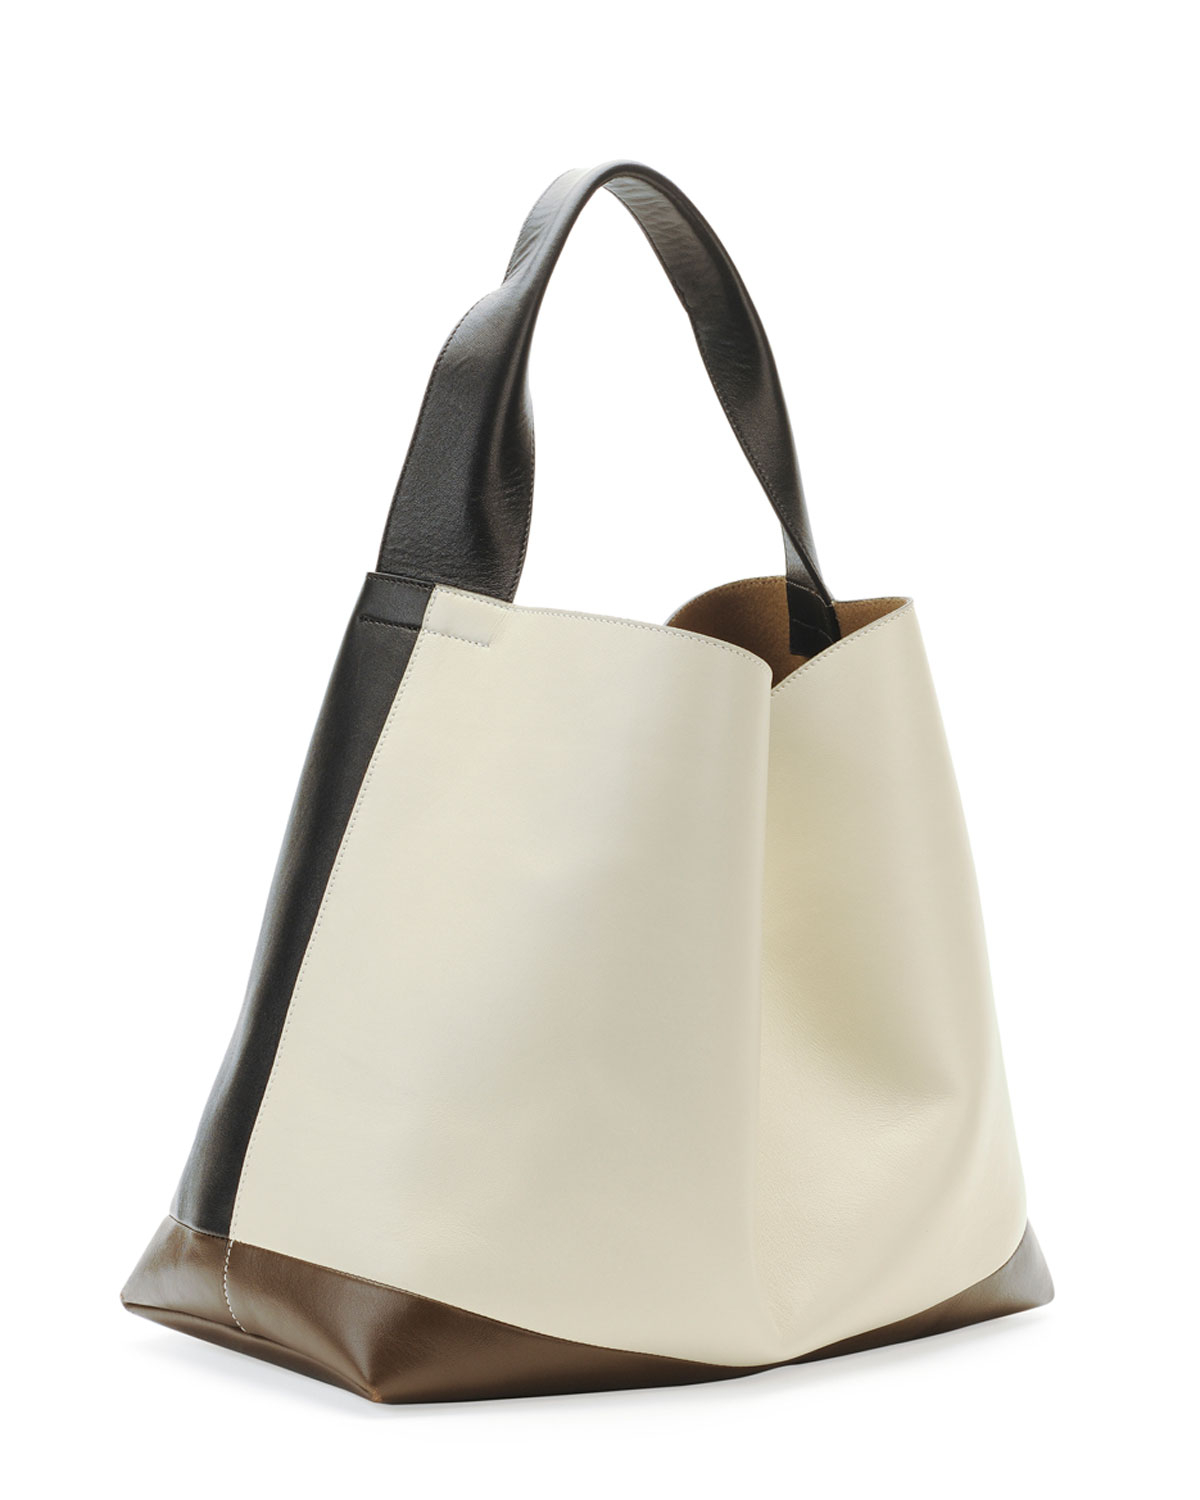 Marni Hobo Bag | Bags More